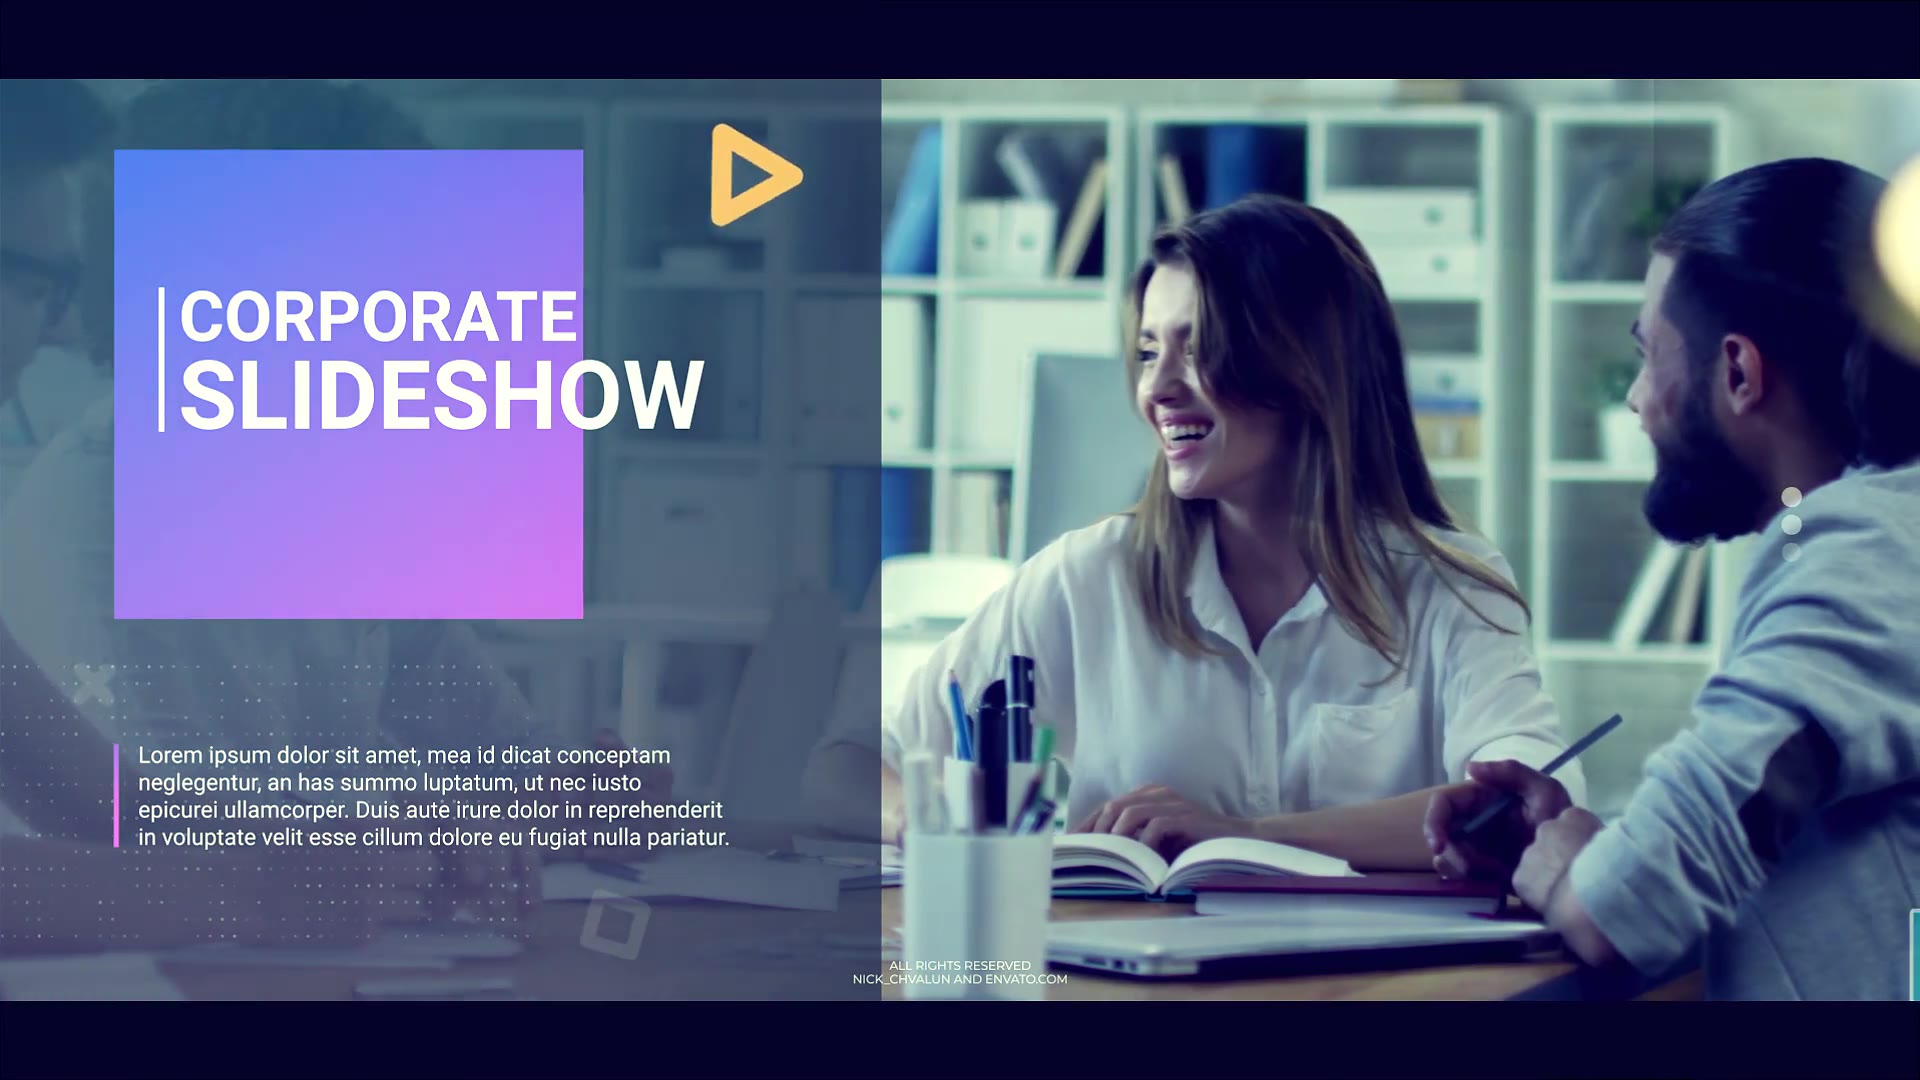 Corporate Slideshow Videohive 38944135 Premiere Pro Image 3